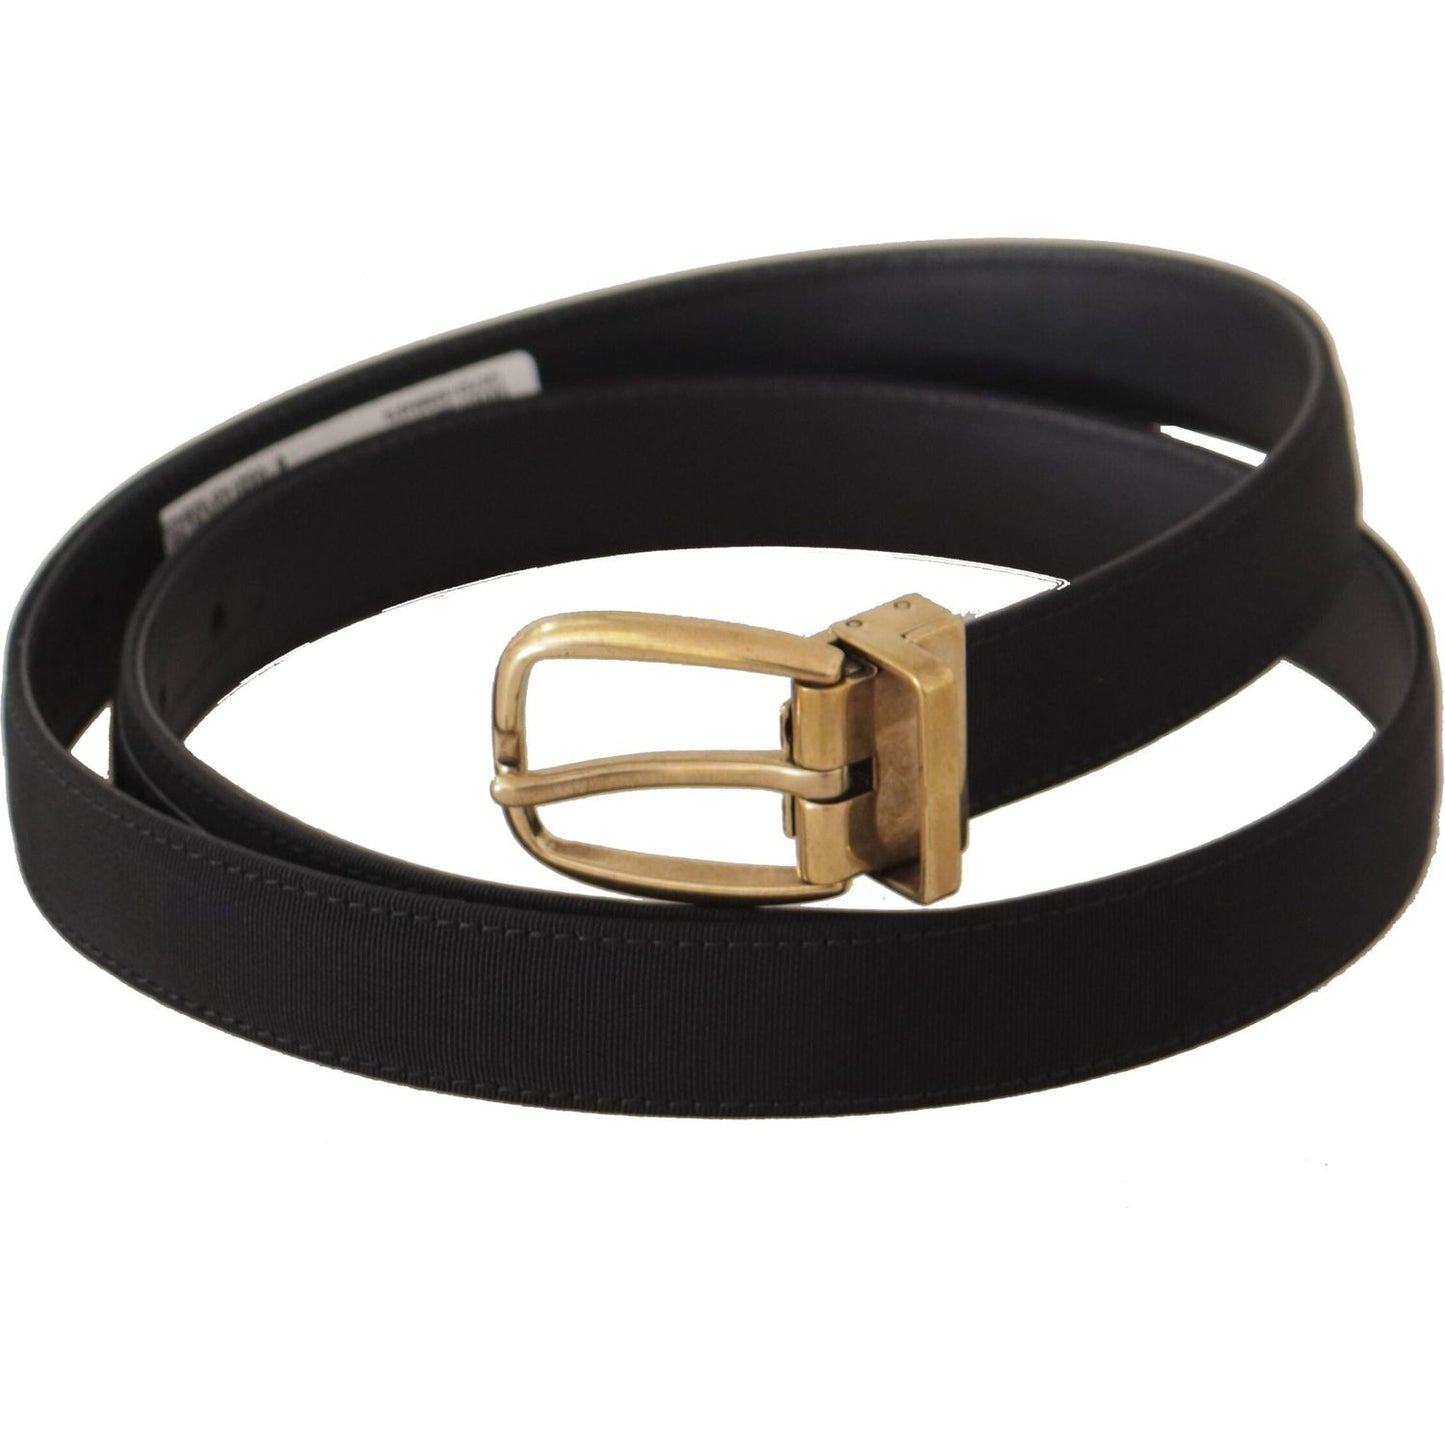 Dolce & Gabbana Elegant Black Canvas-Leather Men's Belt black-grosgrain-canvas-gold-metal-buckle-belt